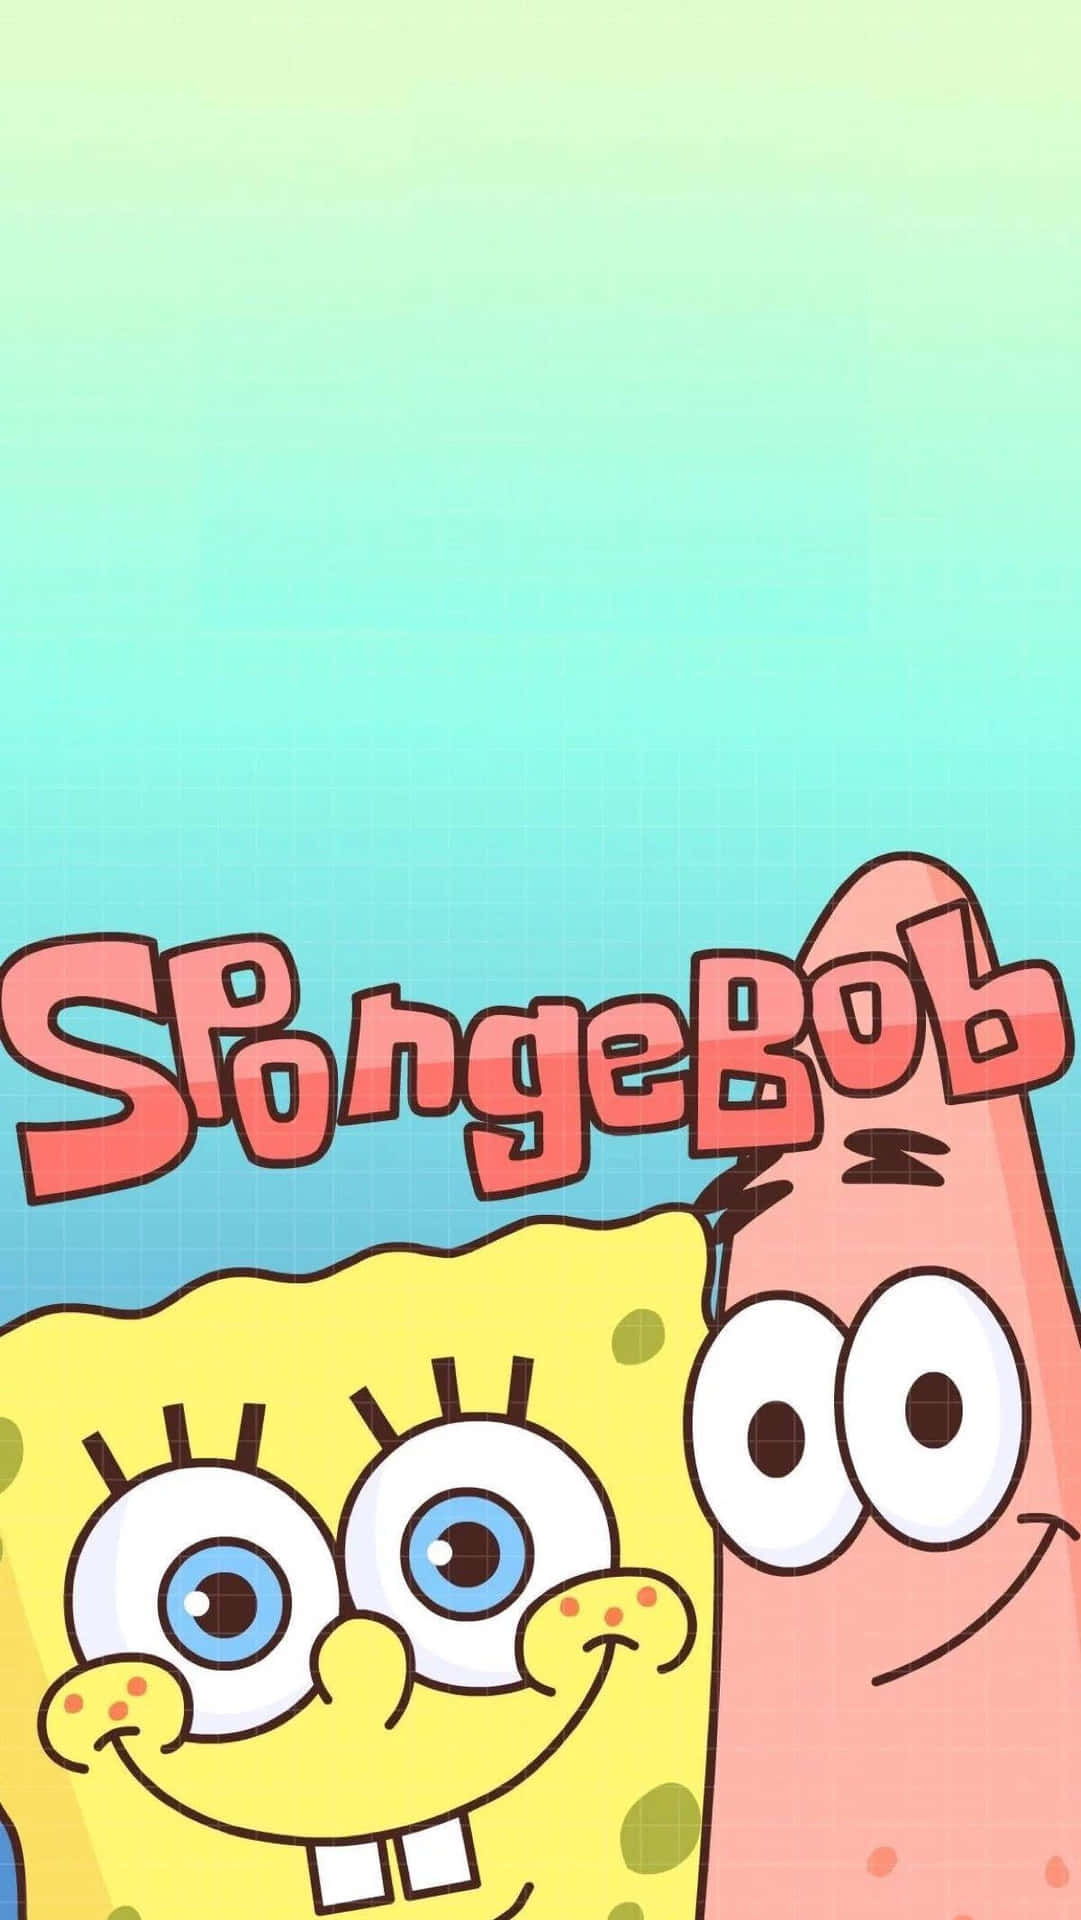 100+] Sad Spongebob Wallpapers